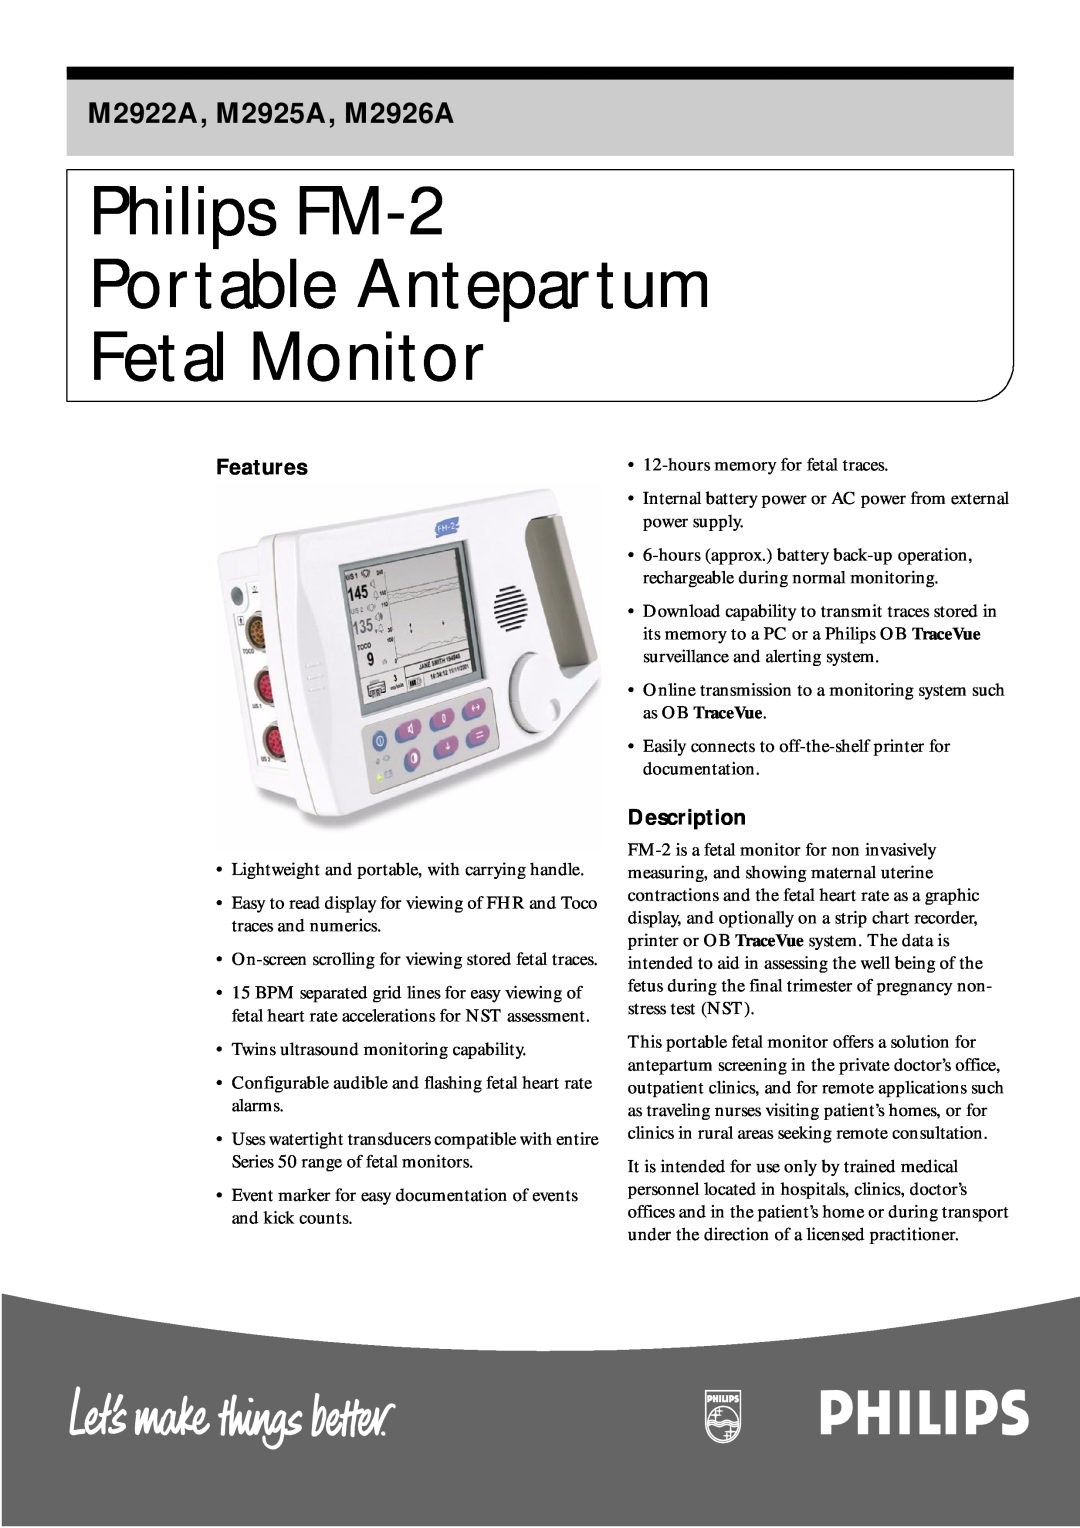 Philips manual Features, Description, Philips FM-2 Portable Antepartum Fetal Monitor, M2922A, M2925A, M2926A 